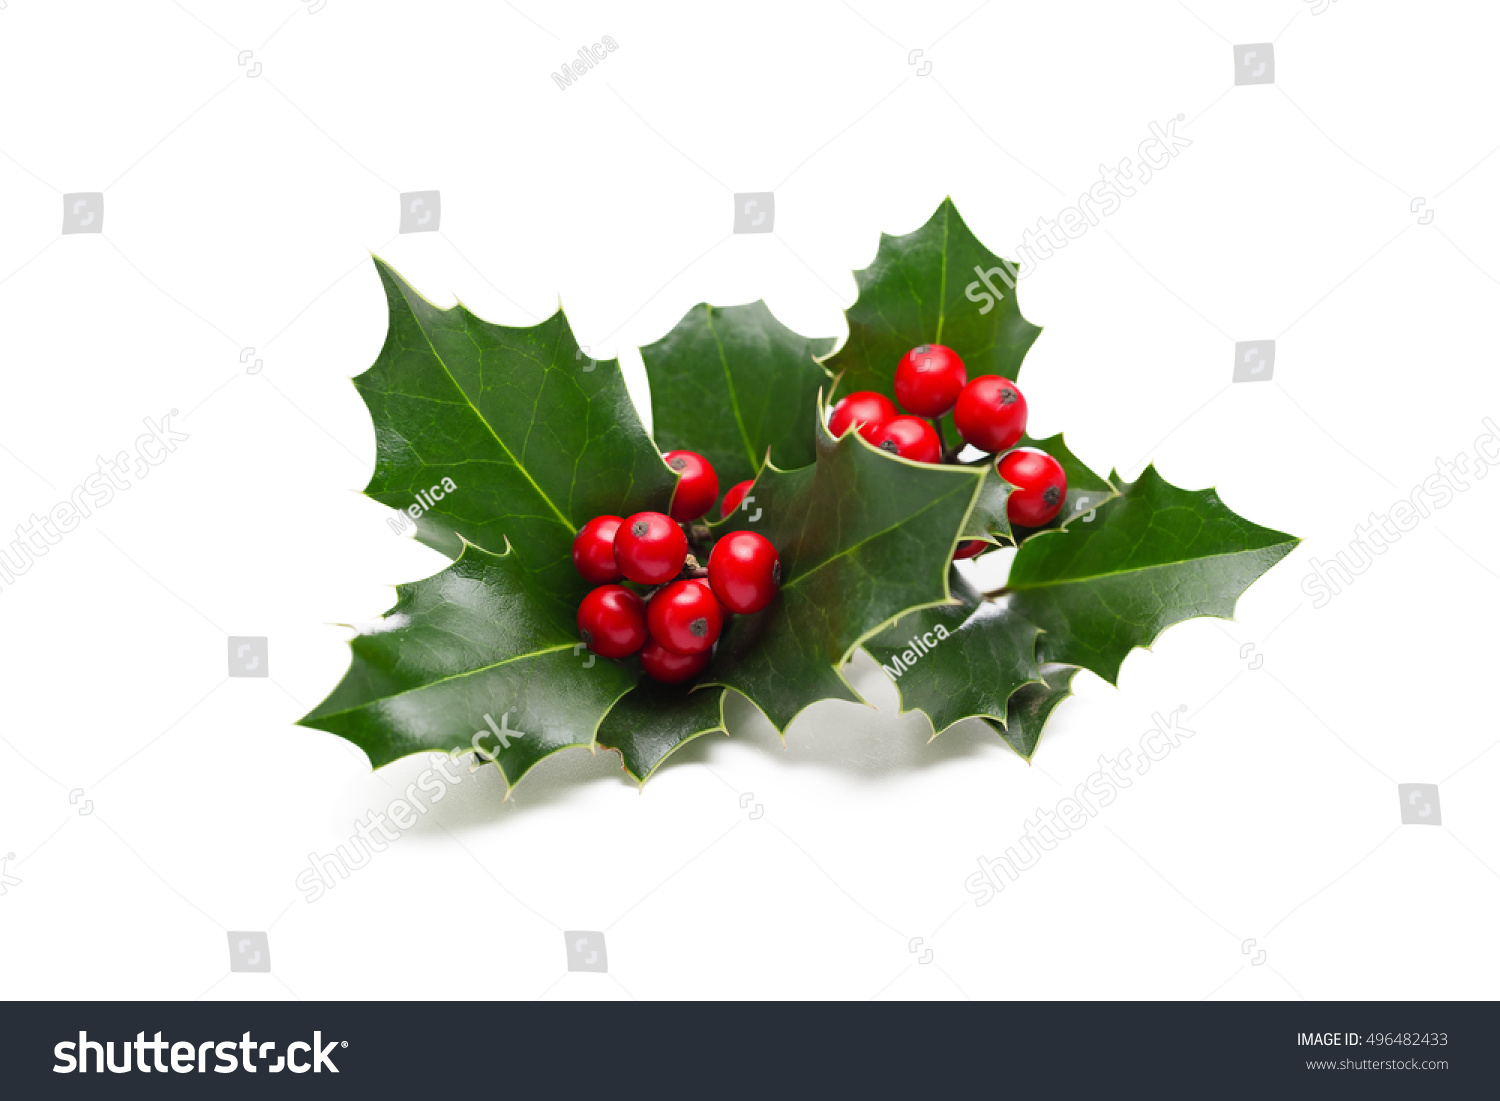 European Holly (Ilex aquifolium) leaves and fruit #496482433